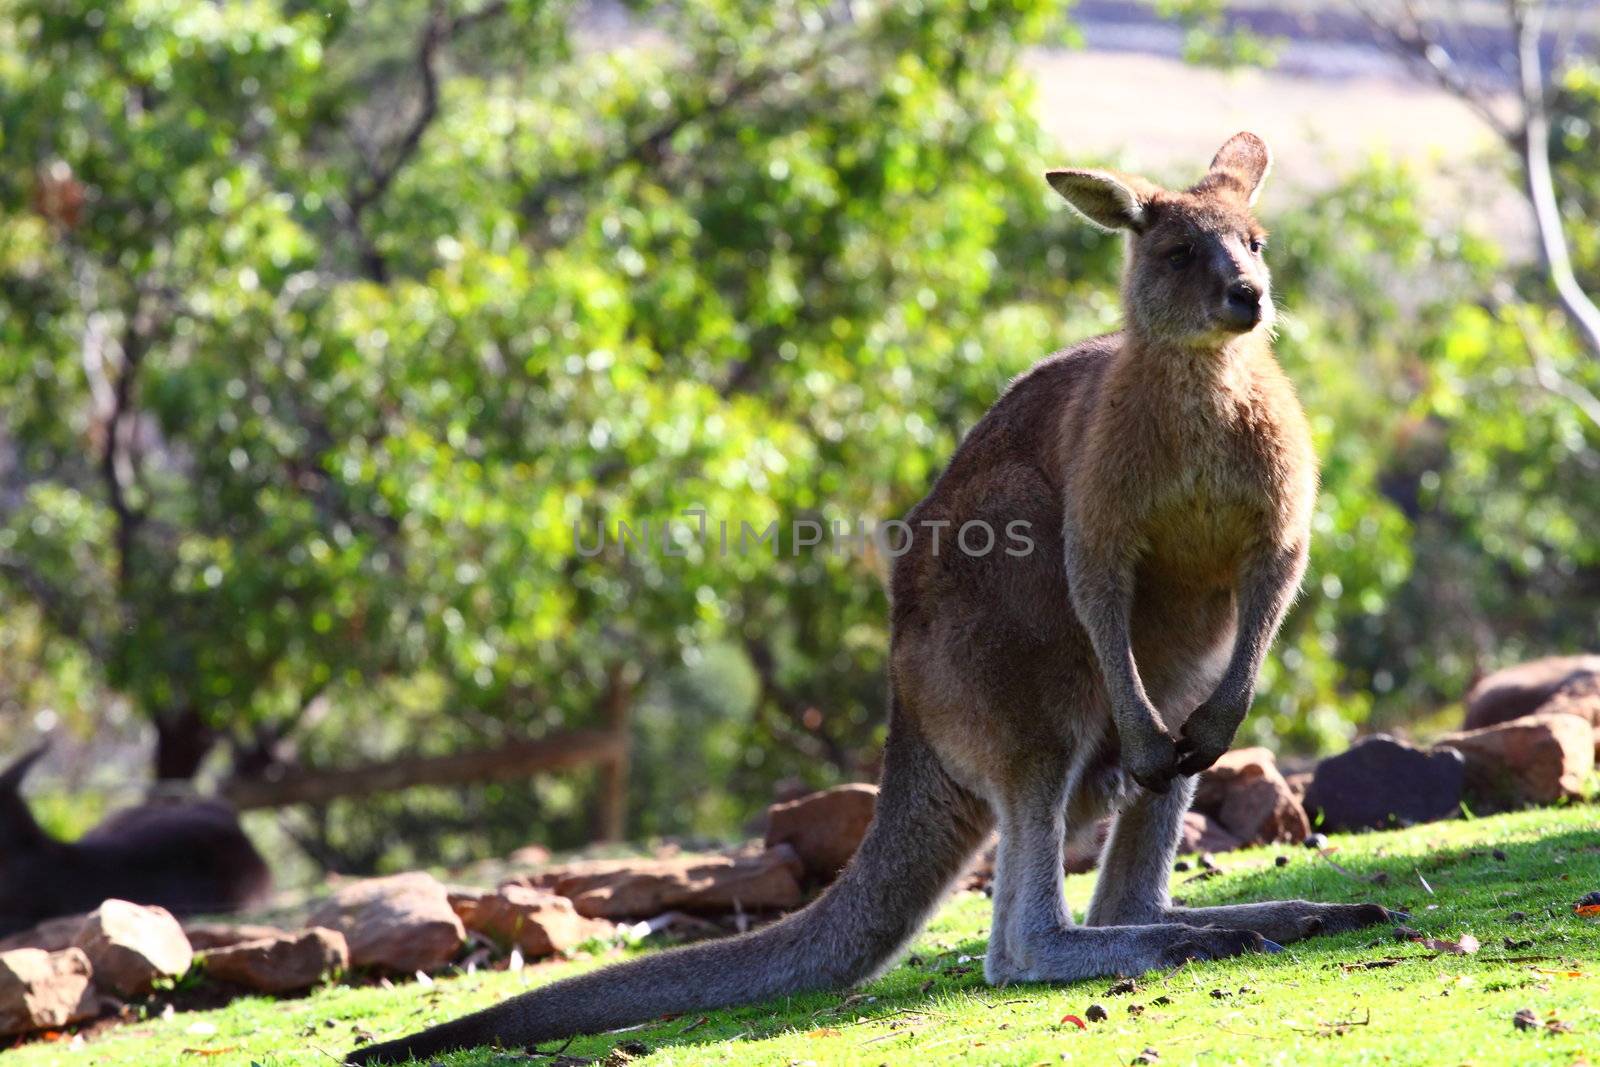 Kangaroo in Australia  by mariusz_prusaczyk